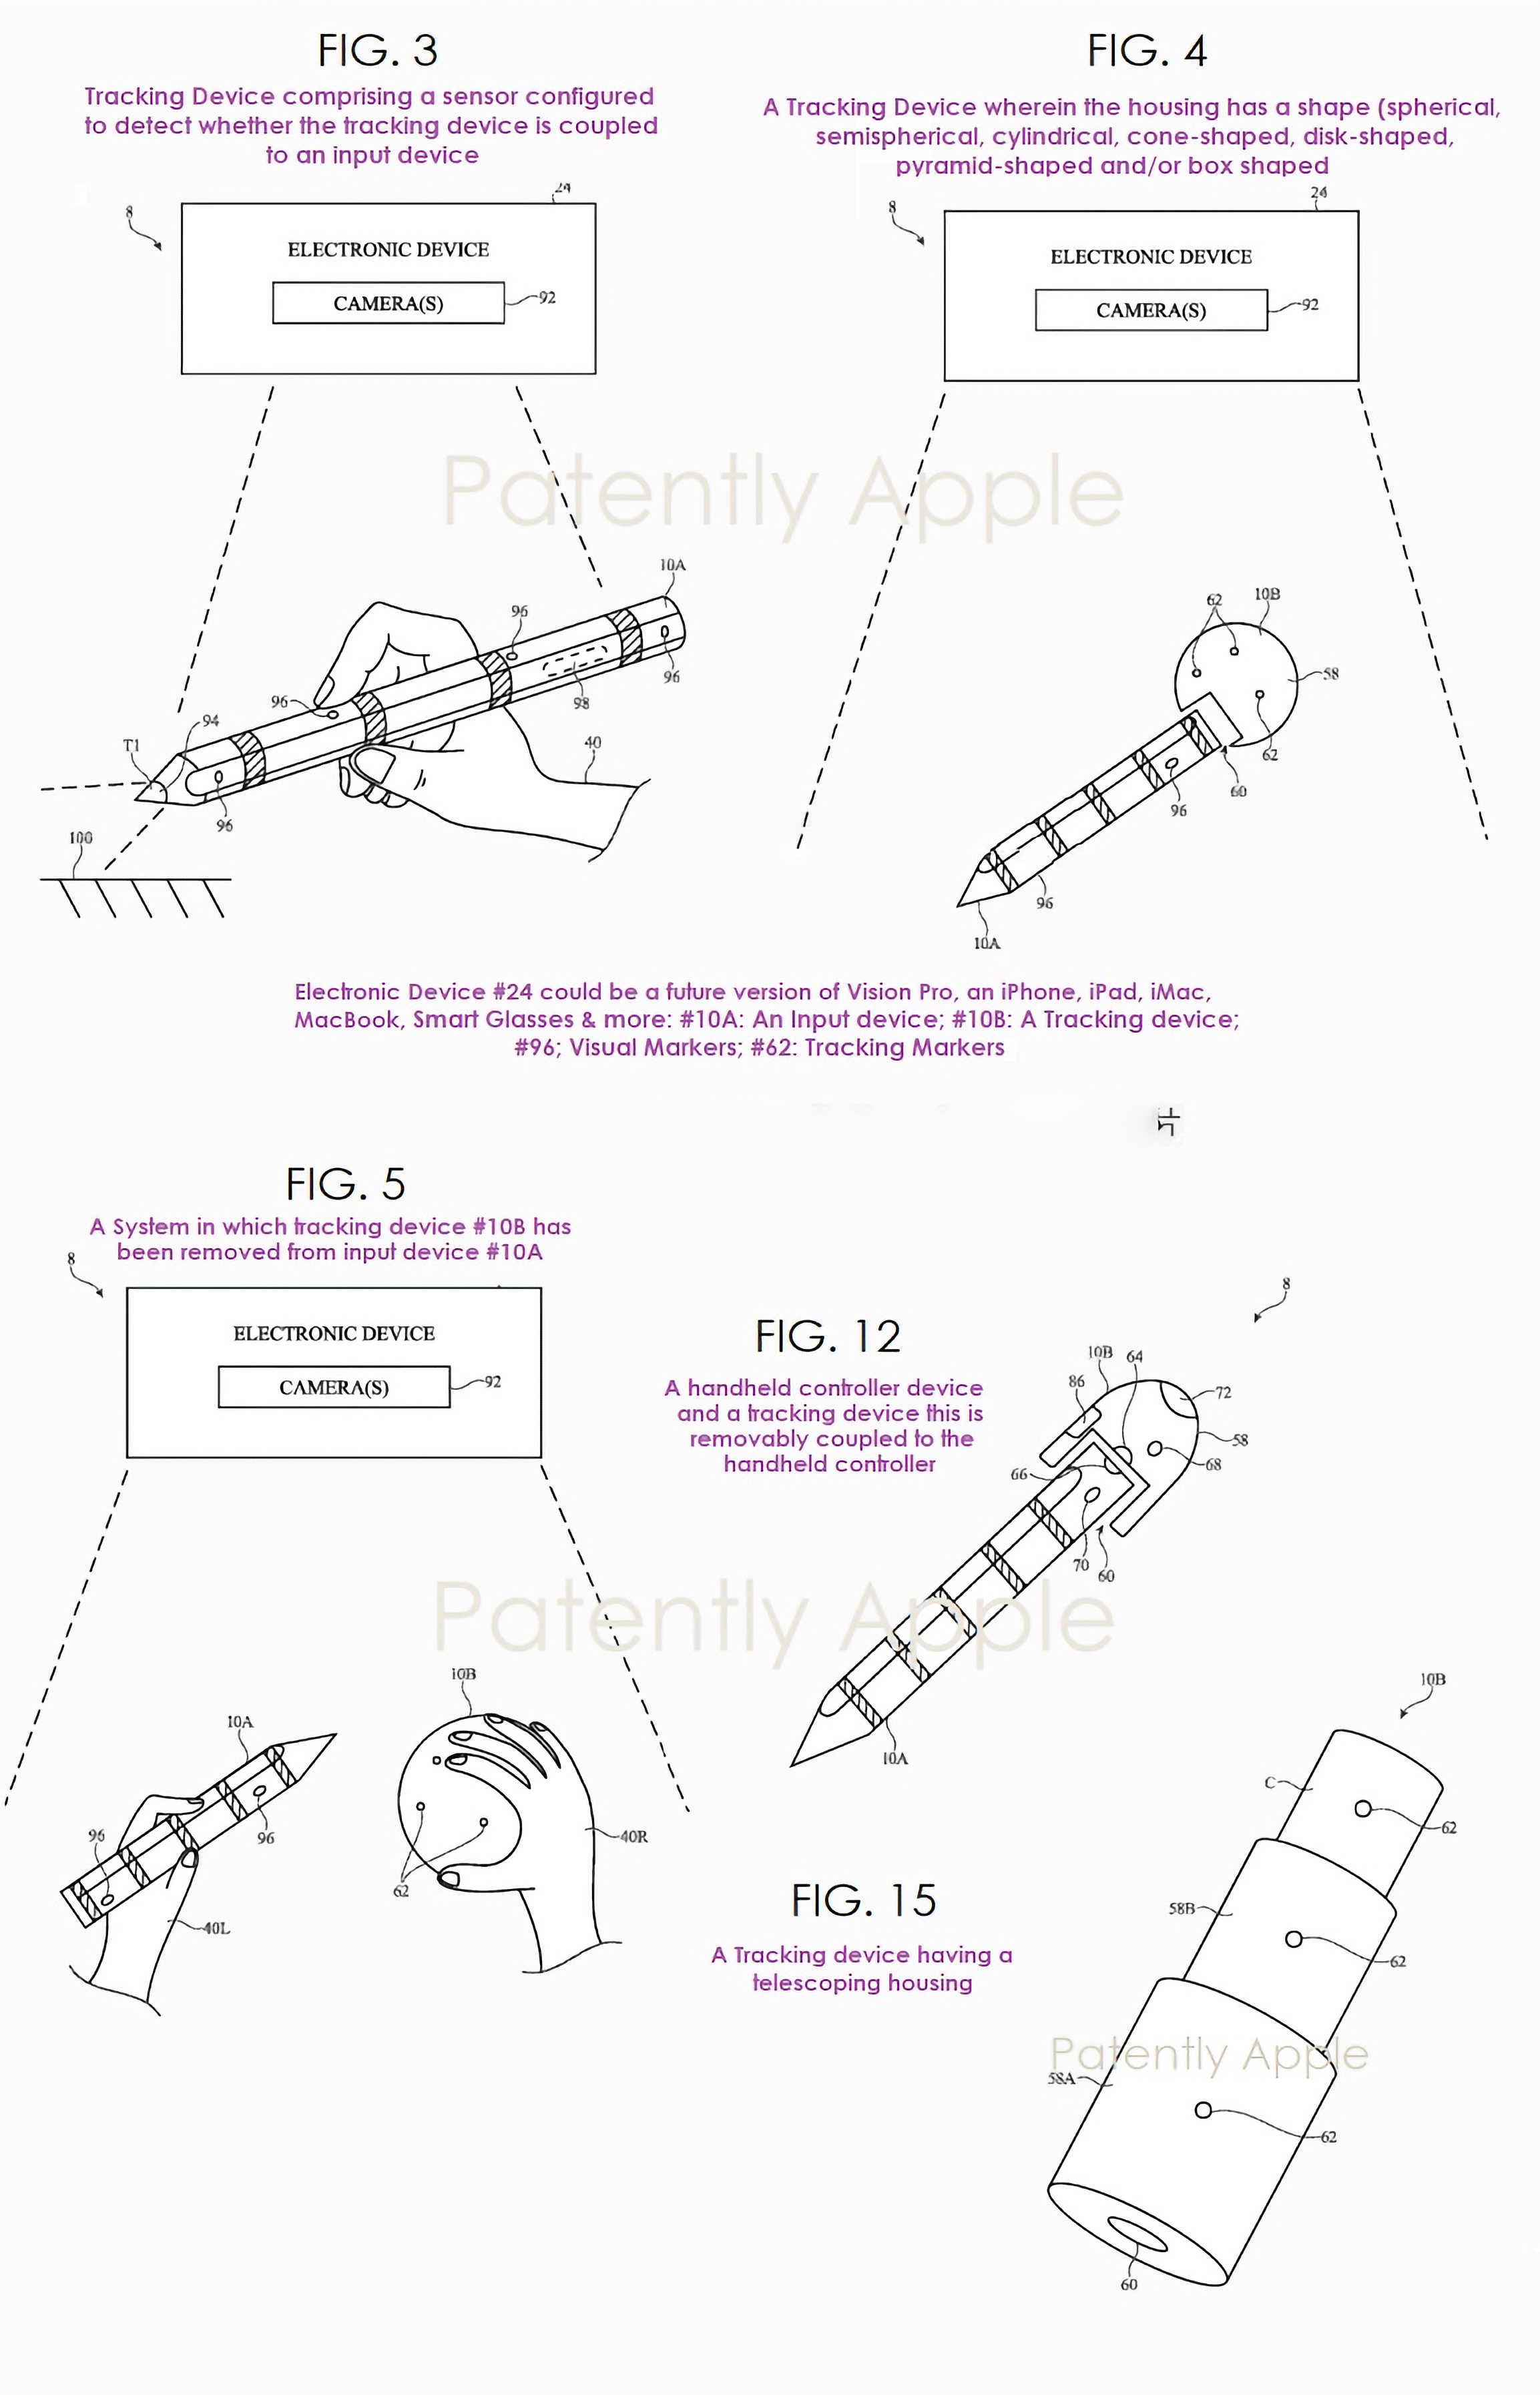 Патент на способы использования Apple Pencil совместно с Apple Vision Pro, Mac или iPad (© Patently Apple)